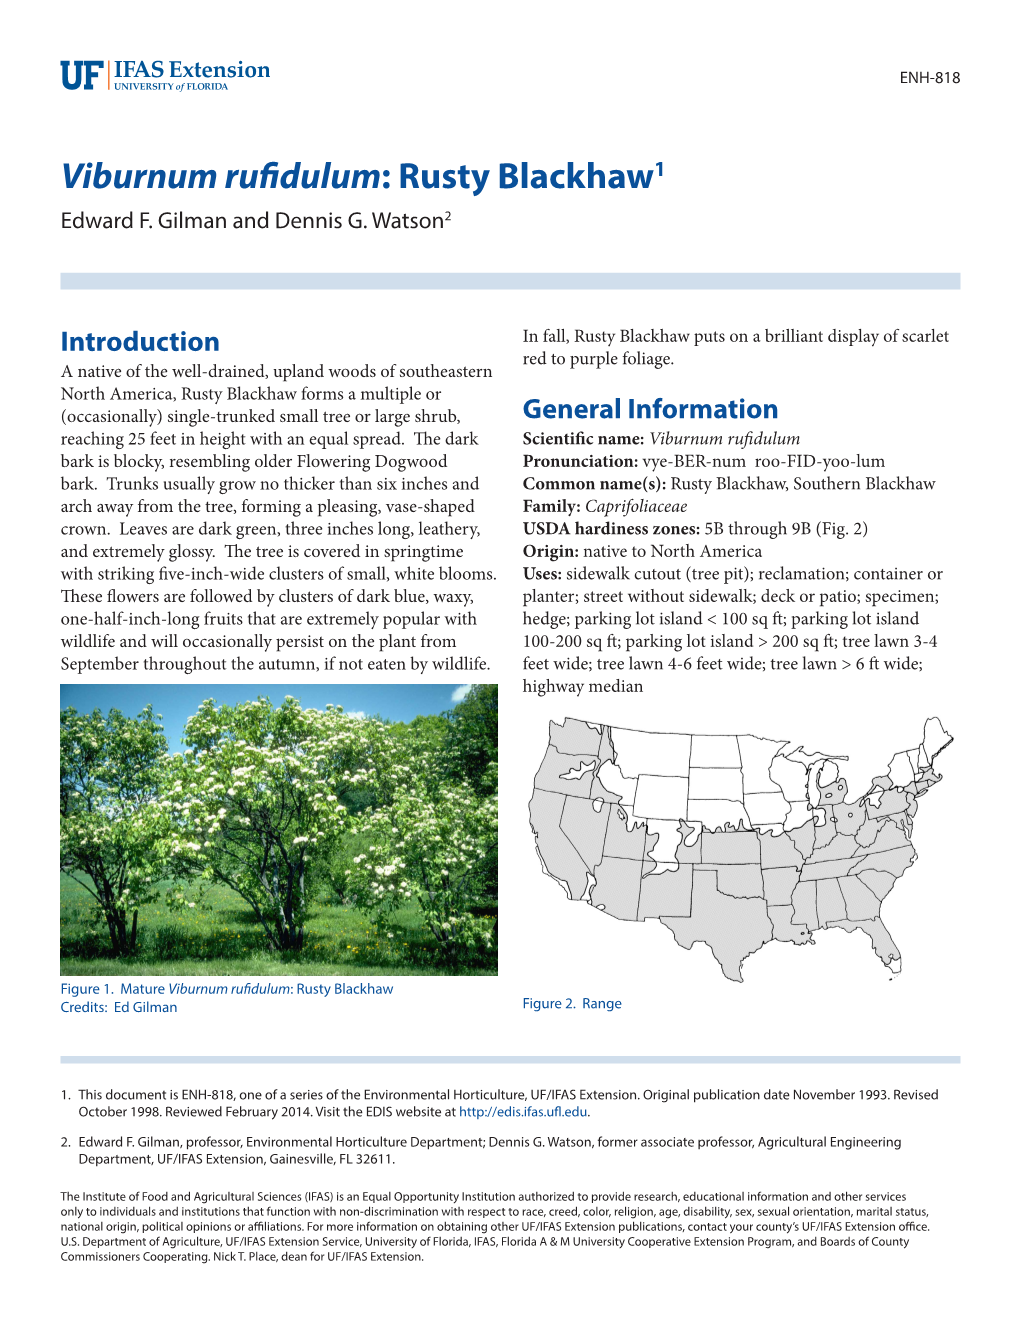 Viburnum Rufidulum: Rusty Blackhaw1 Edward F